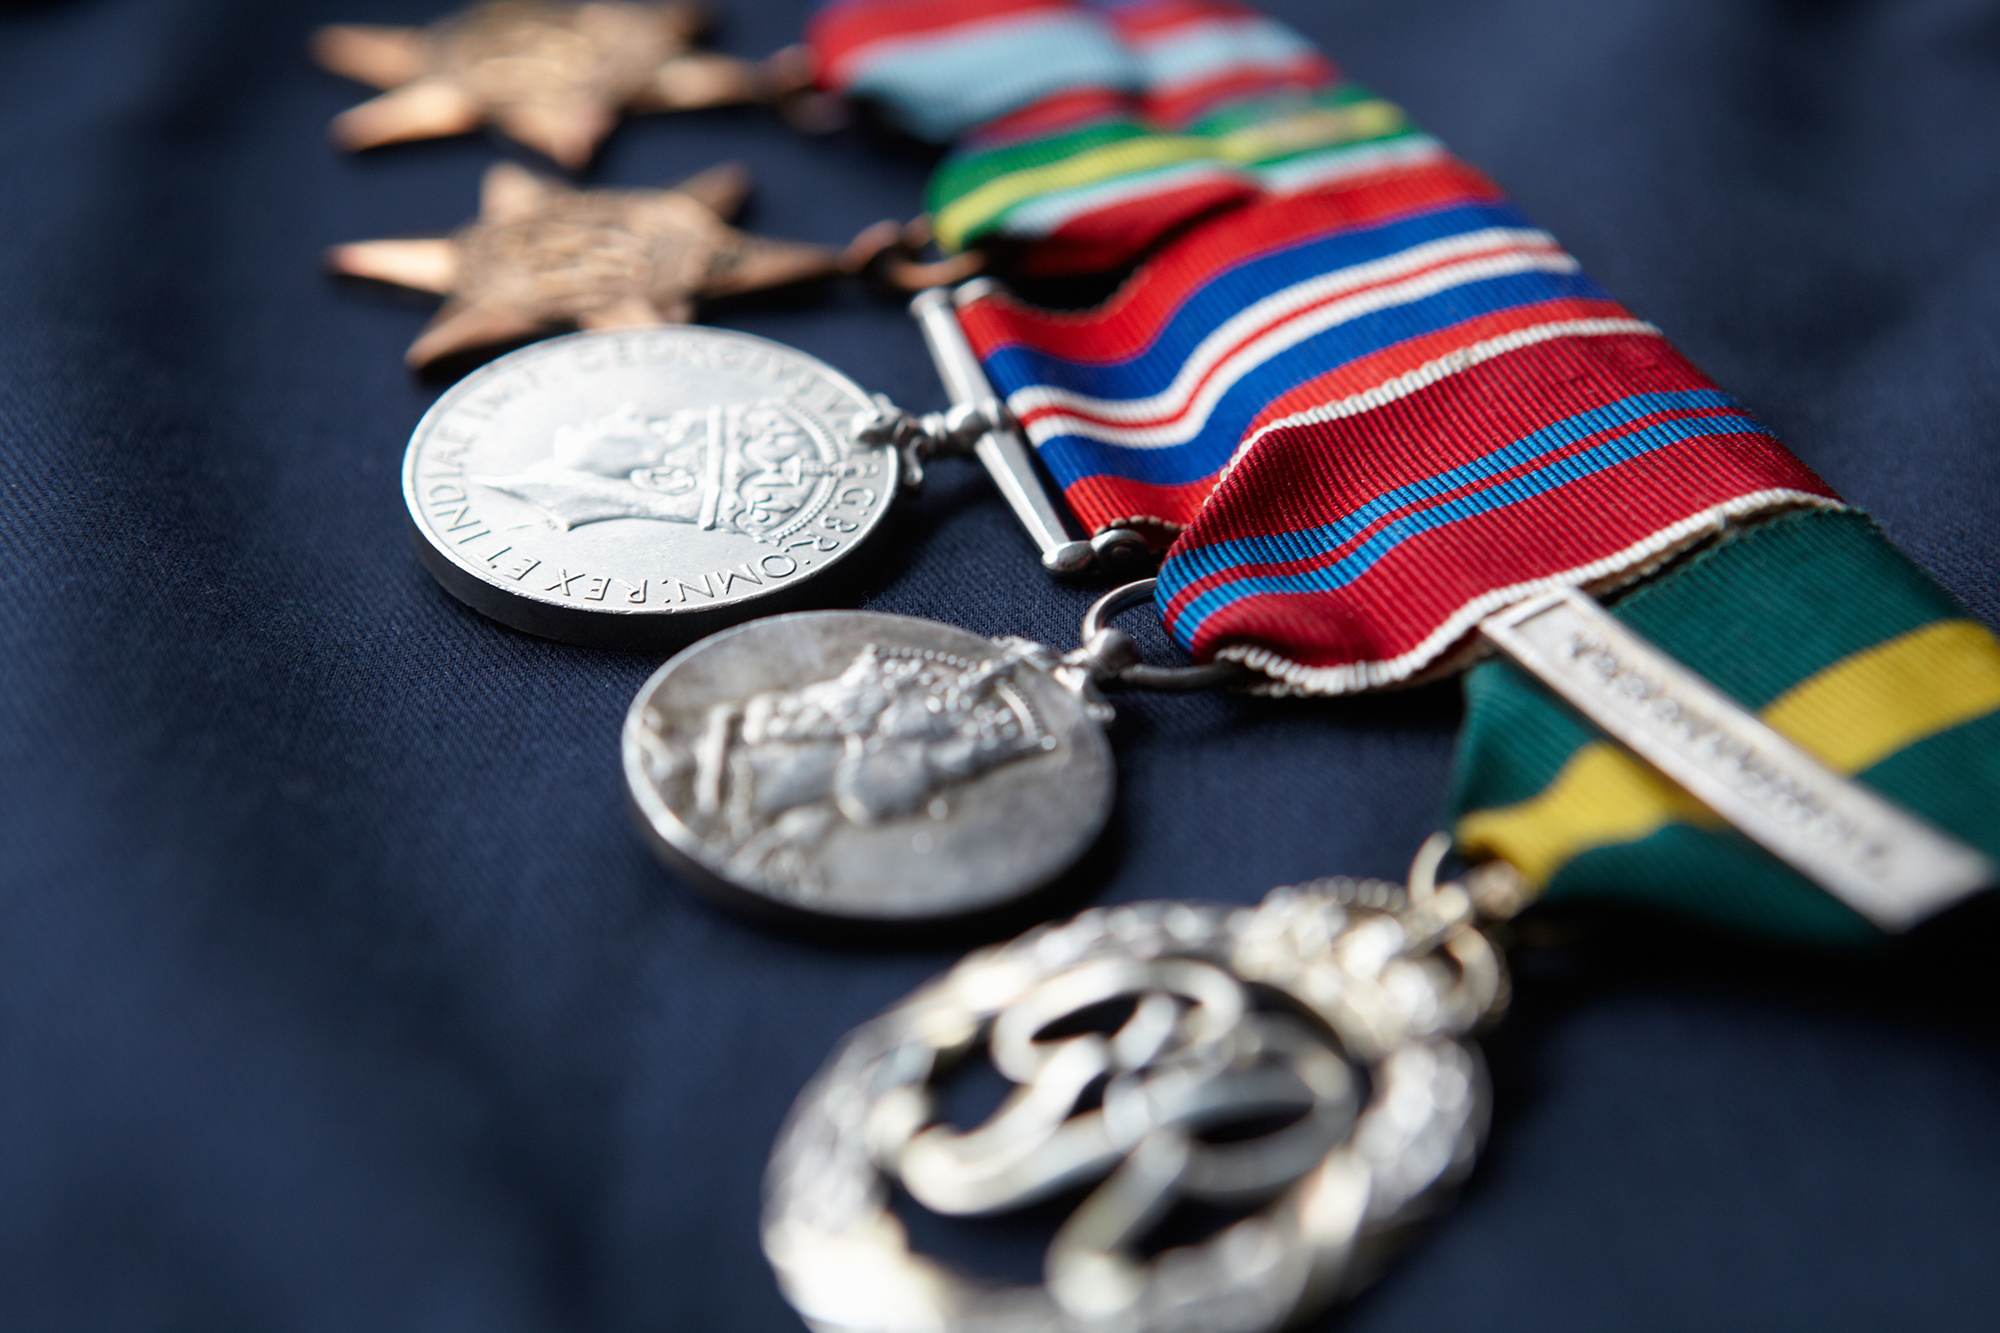 Collectors medals